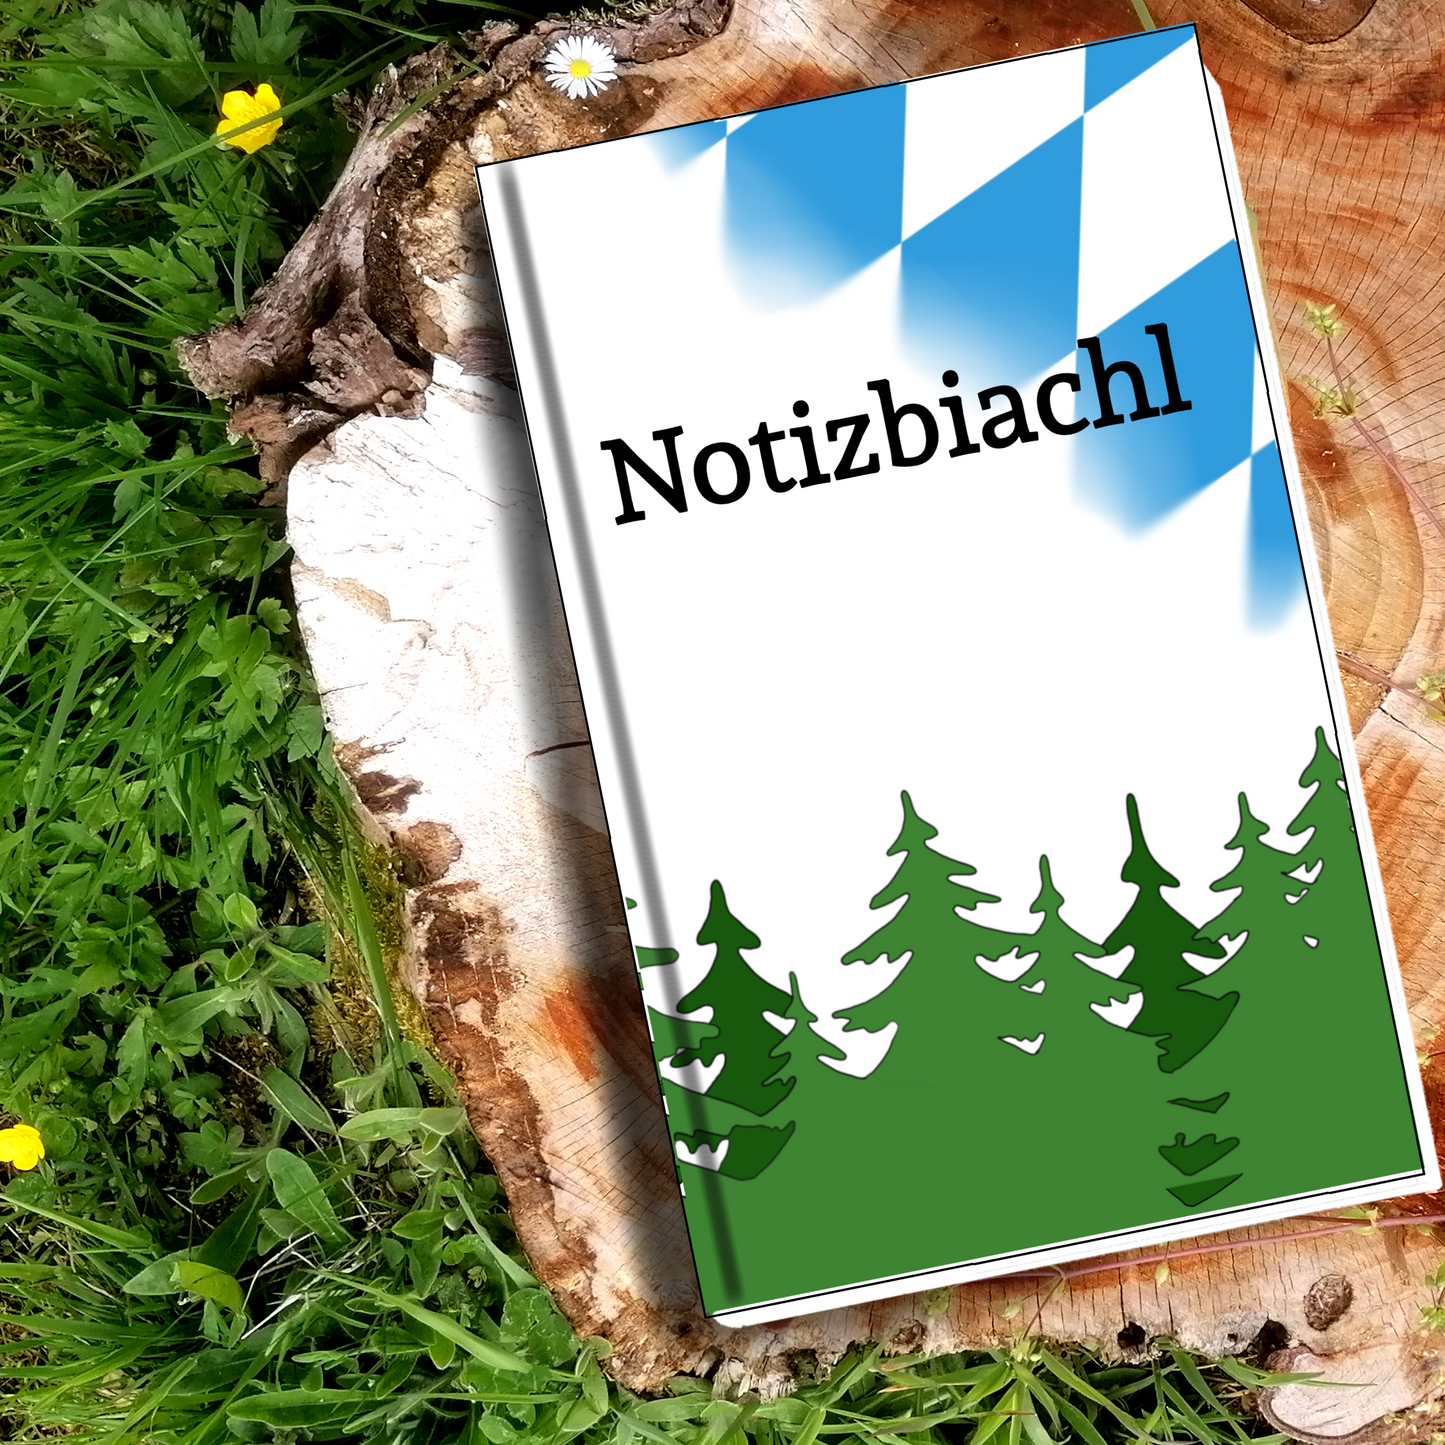 Notizbiachl - bayerisches Notizbuch blanco